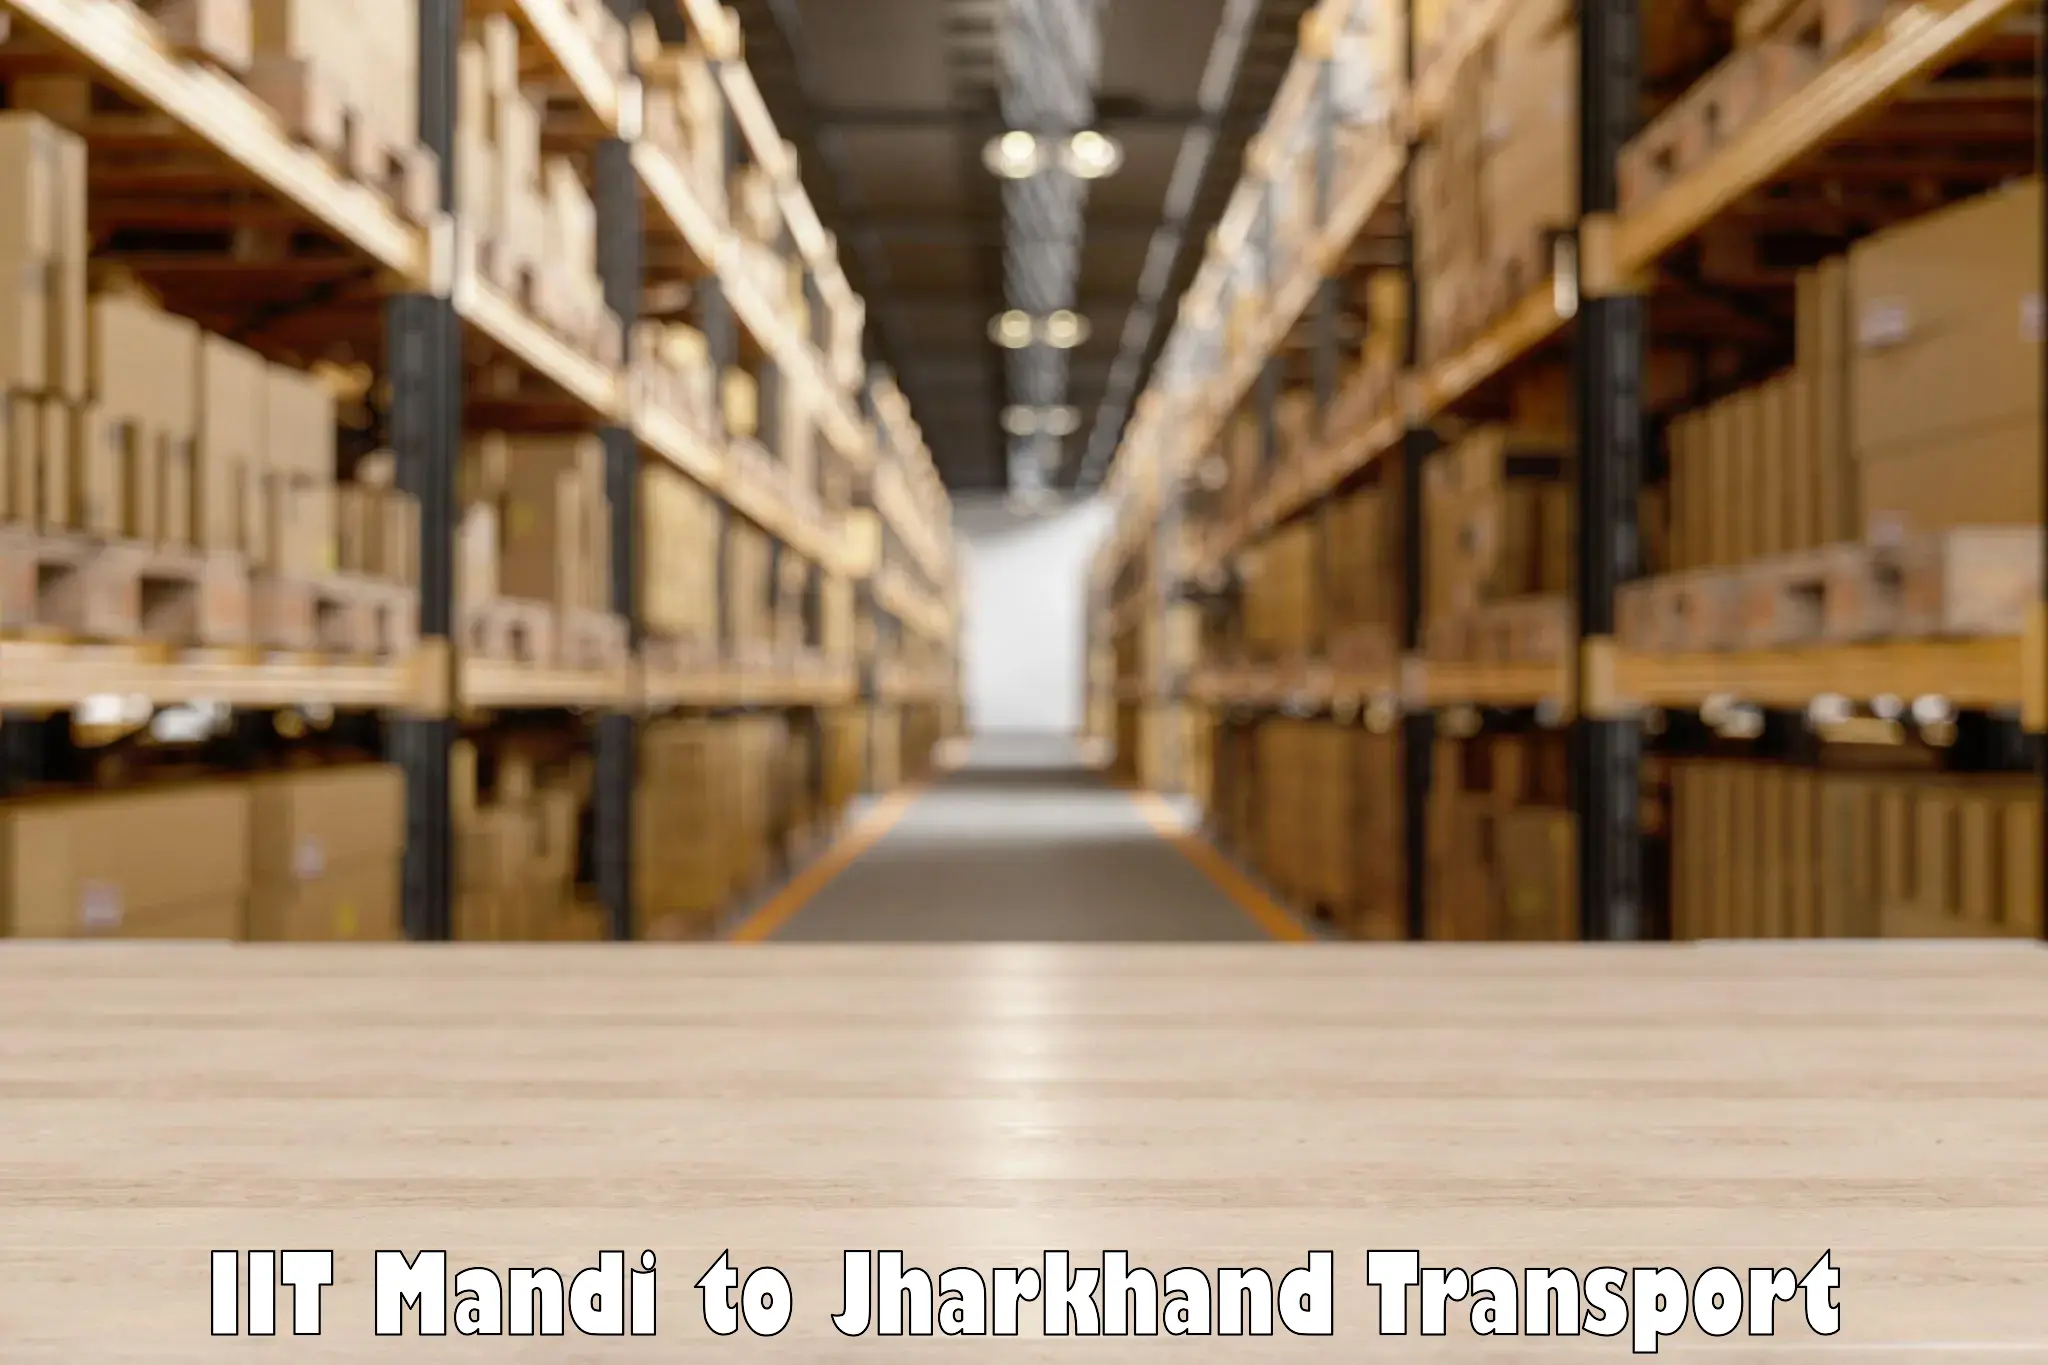 Pick up transport service IIT Mandi to Torpa